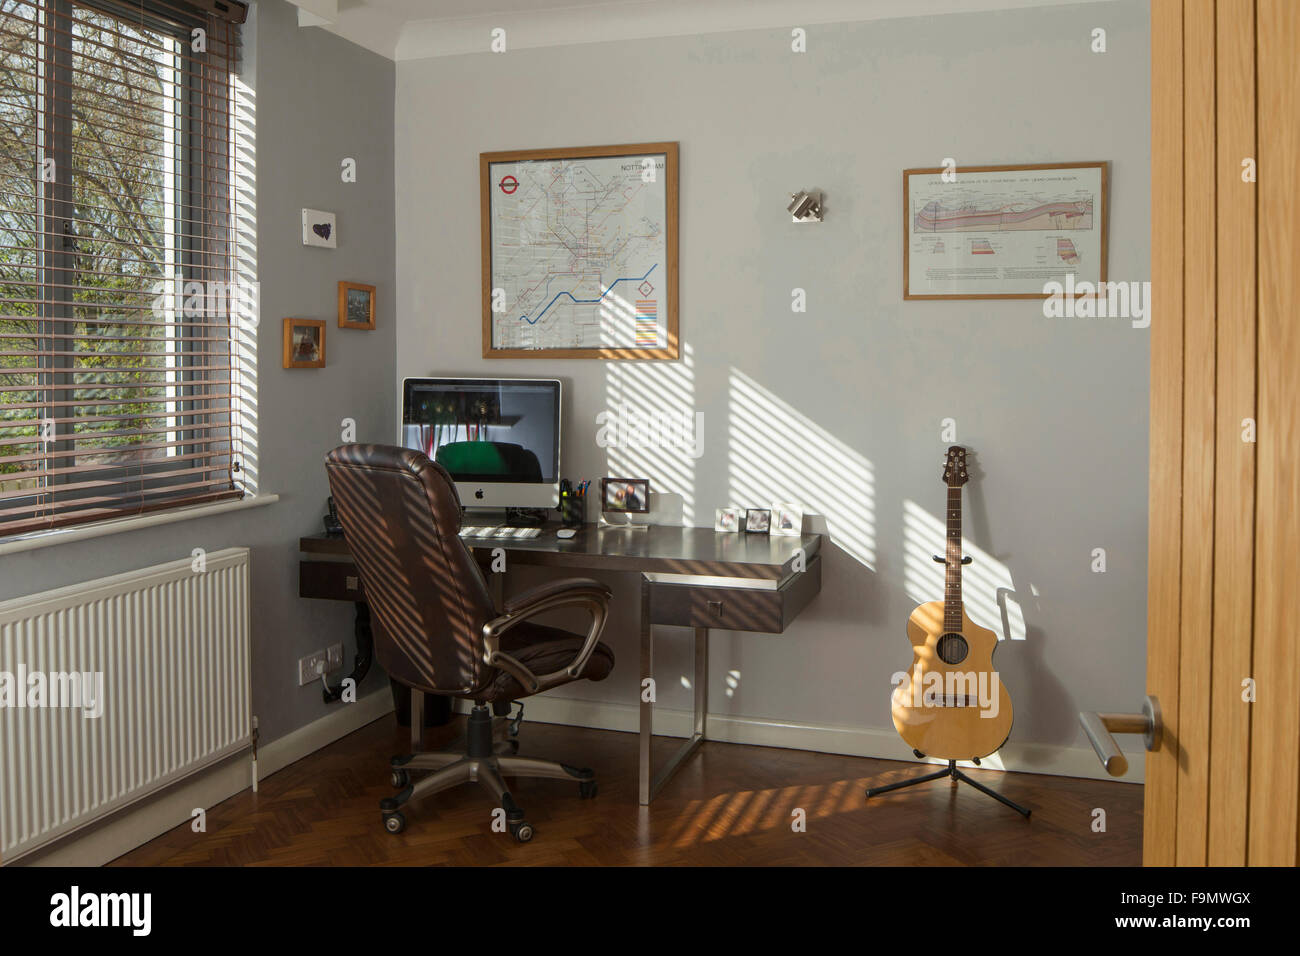 Home-Office-Studie. Eine Gitarre, Computer-Monitor und Tastatur auf dem Schreibtisch. Weiße Wände. Stockfoto